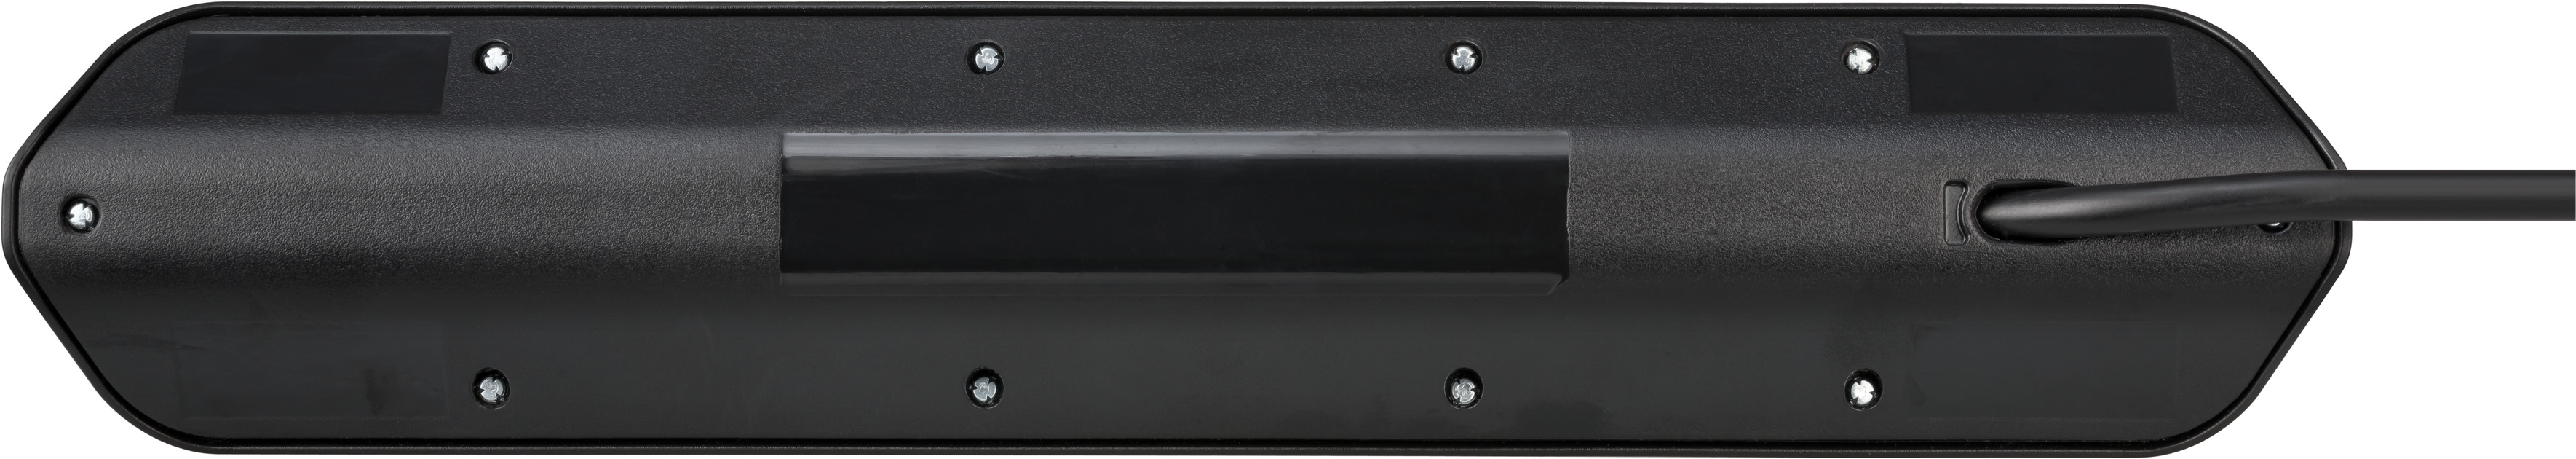 Enchufe de esquina brennenstuhl®estilo con función de carga USB 4 vías 2x  tomas de corriente & 2x Europeo plata/negro